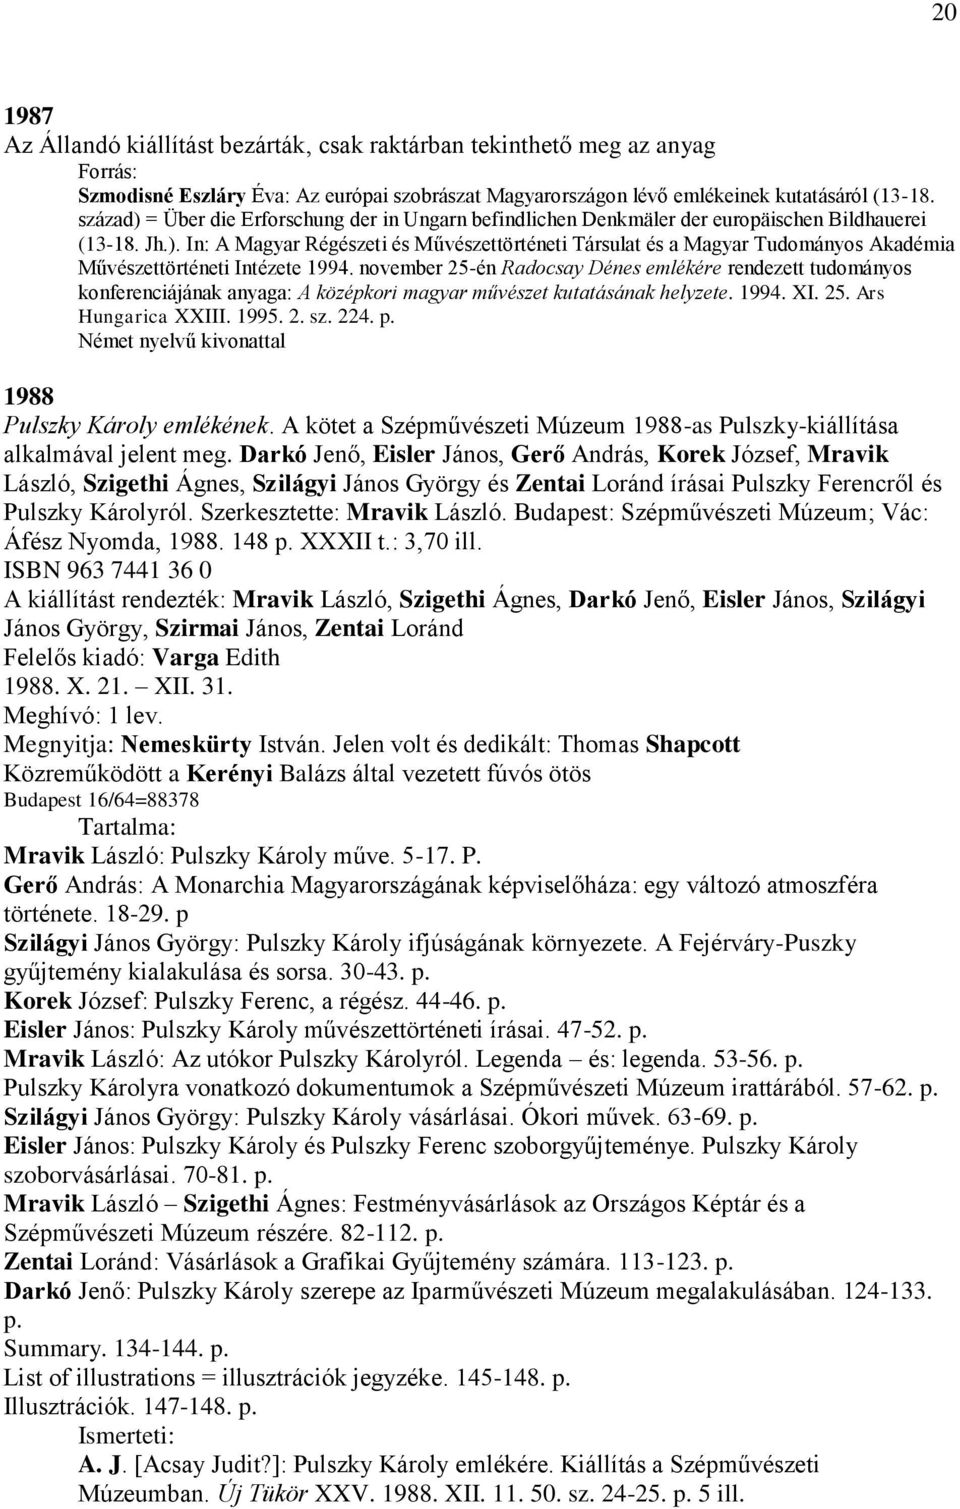 november 25-én Radocsay Dénes emlékére rendezett tudományos konferenciájának anyaga: A középkori magyar művészet kutatásának helyzete. 1994. XI. 25. Ars Hungarica XXIII. 1995. 2. sz. 224. p.